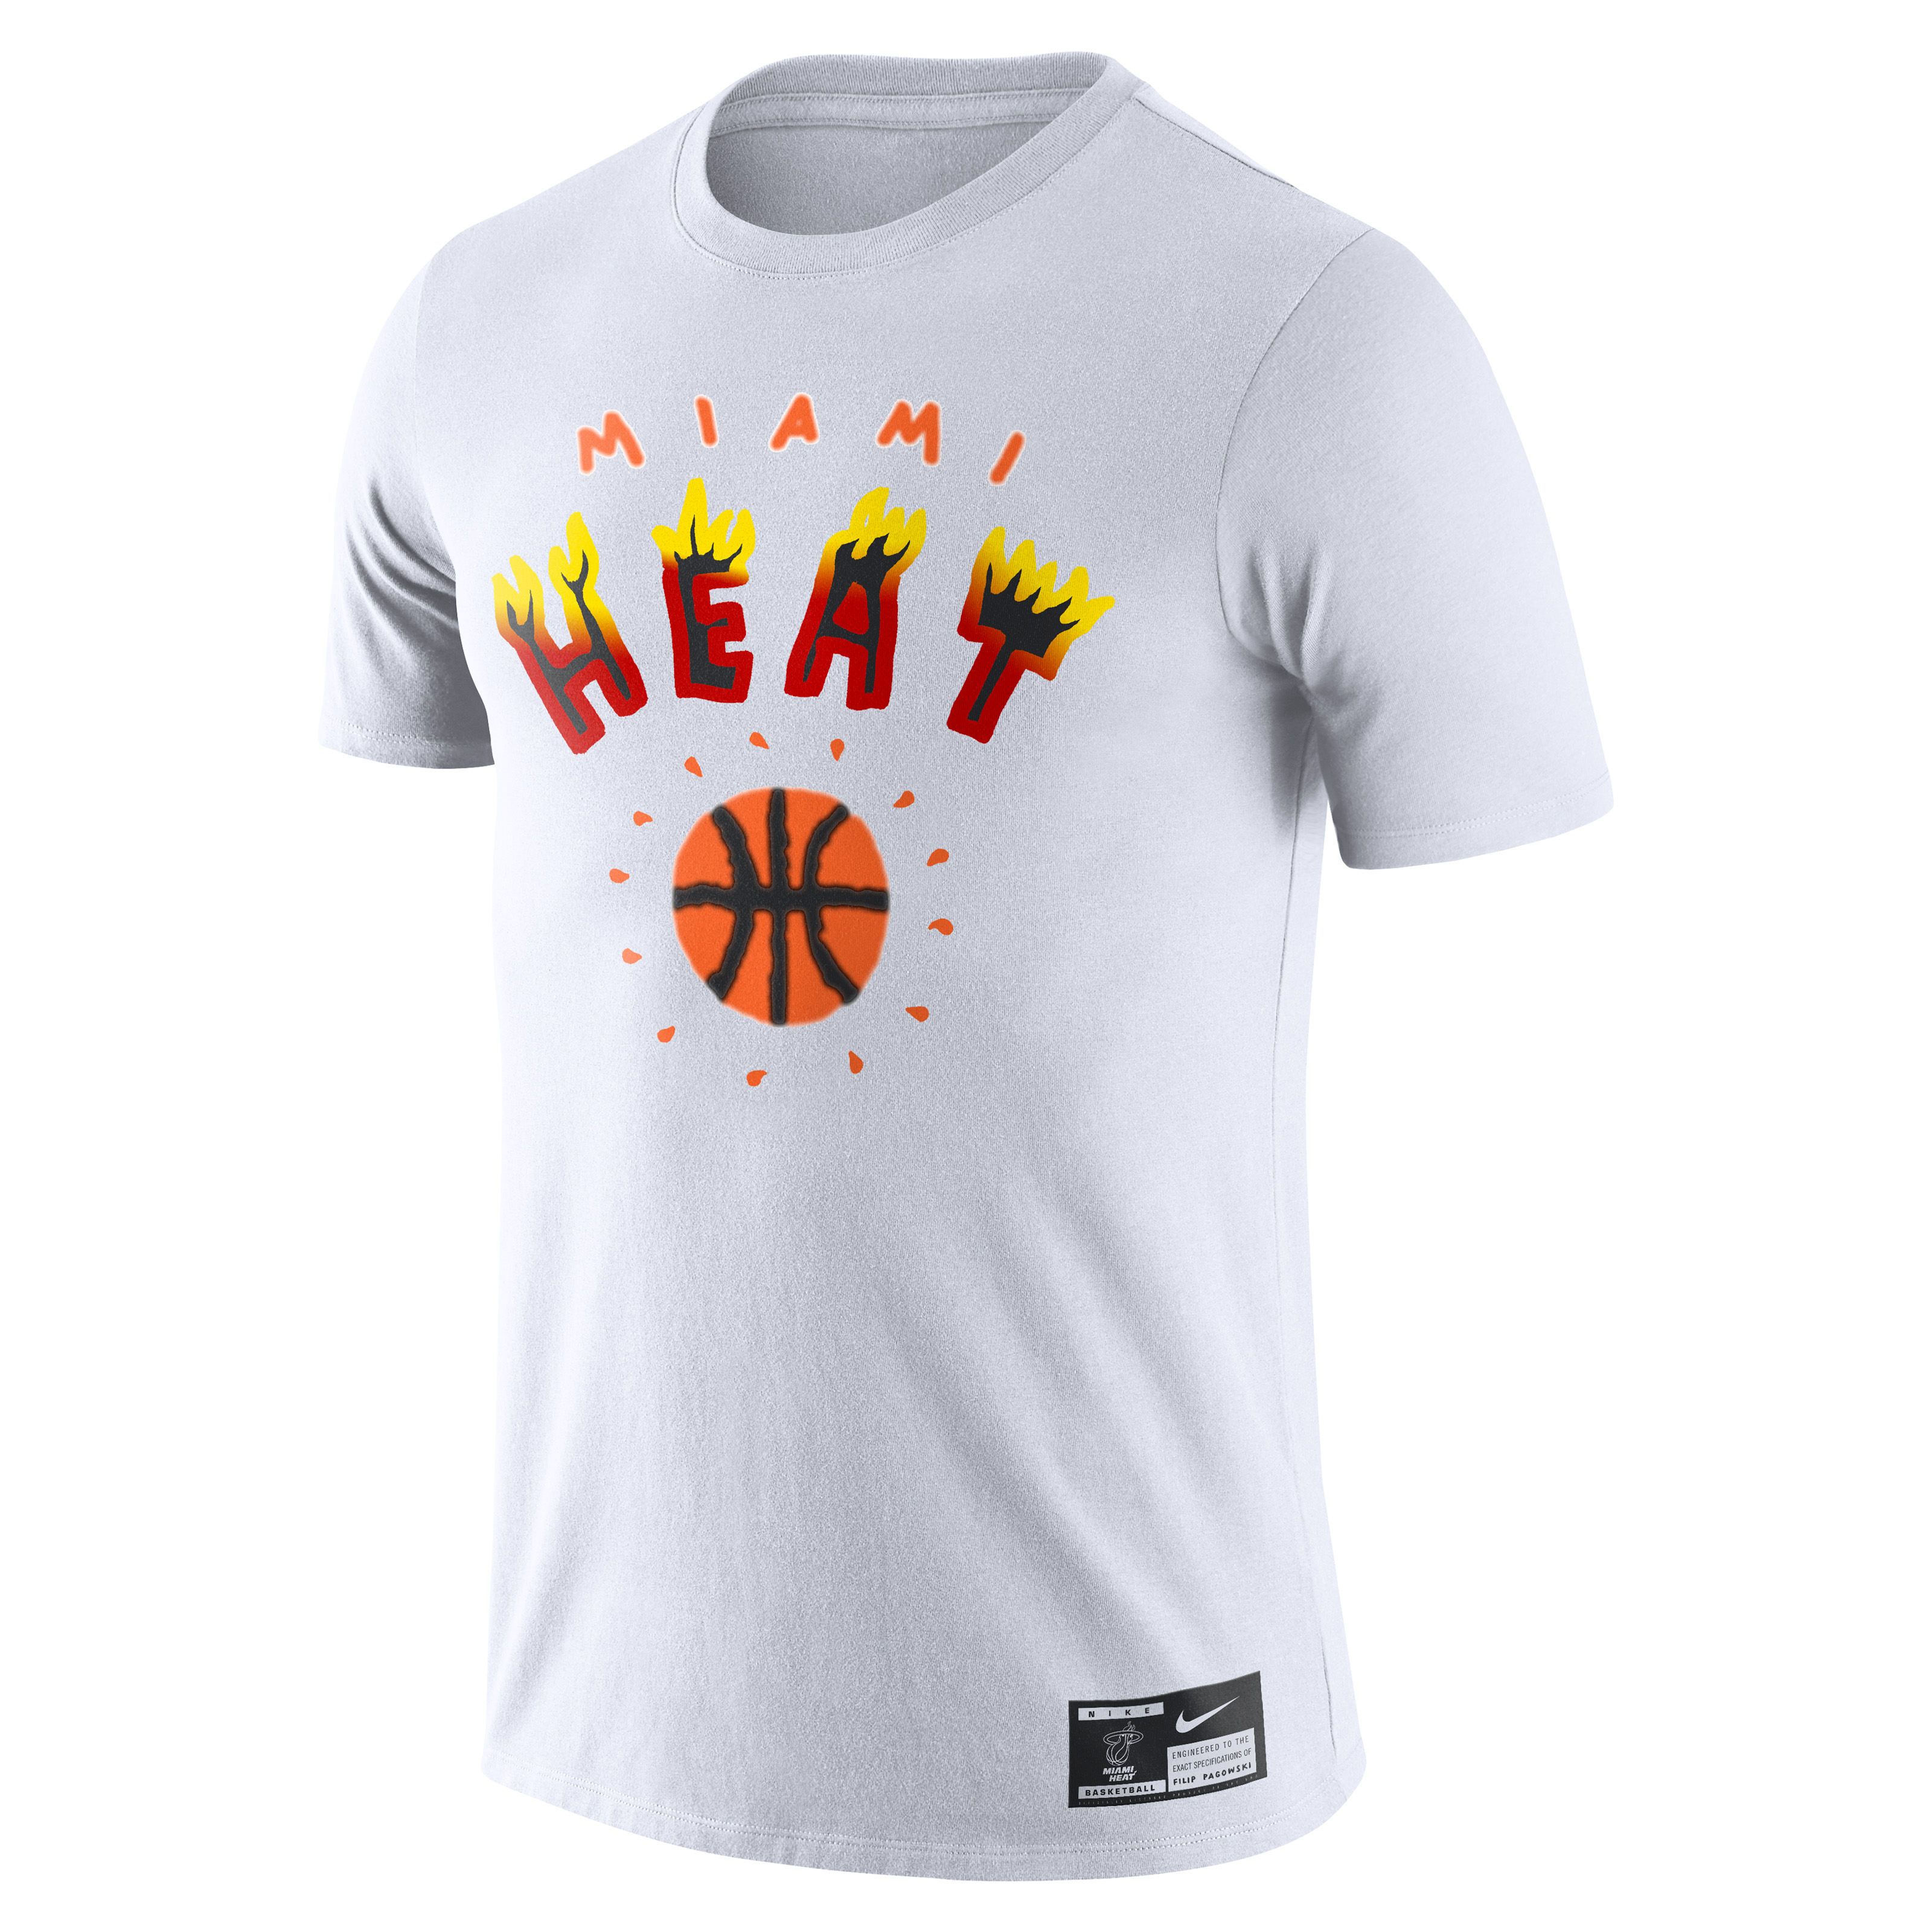 Filip Pagowski Nike T shirt &#x27;Miami Heat&#x27;